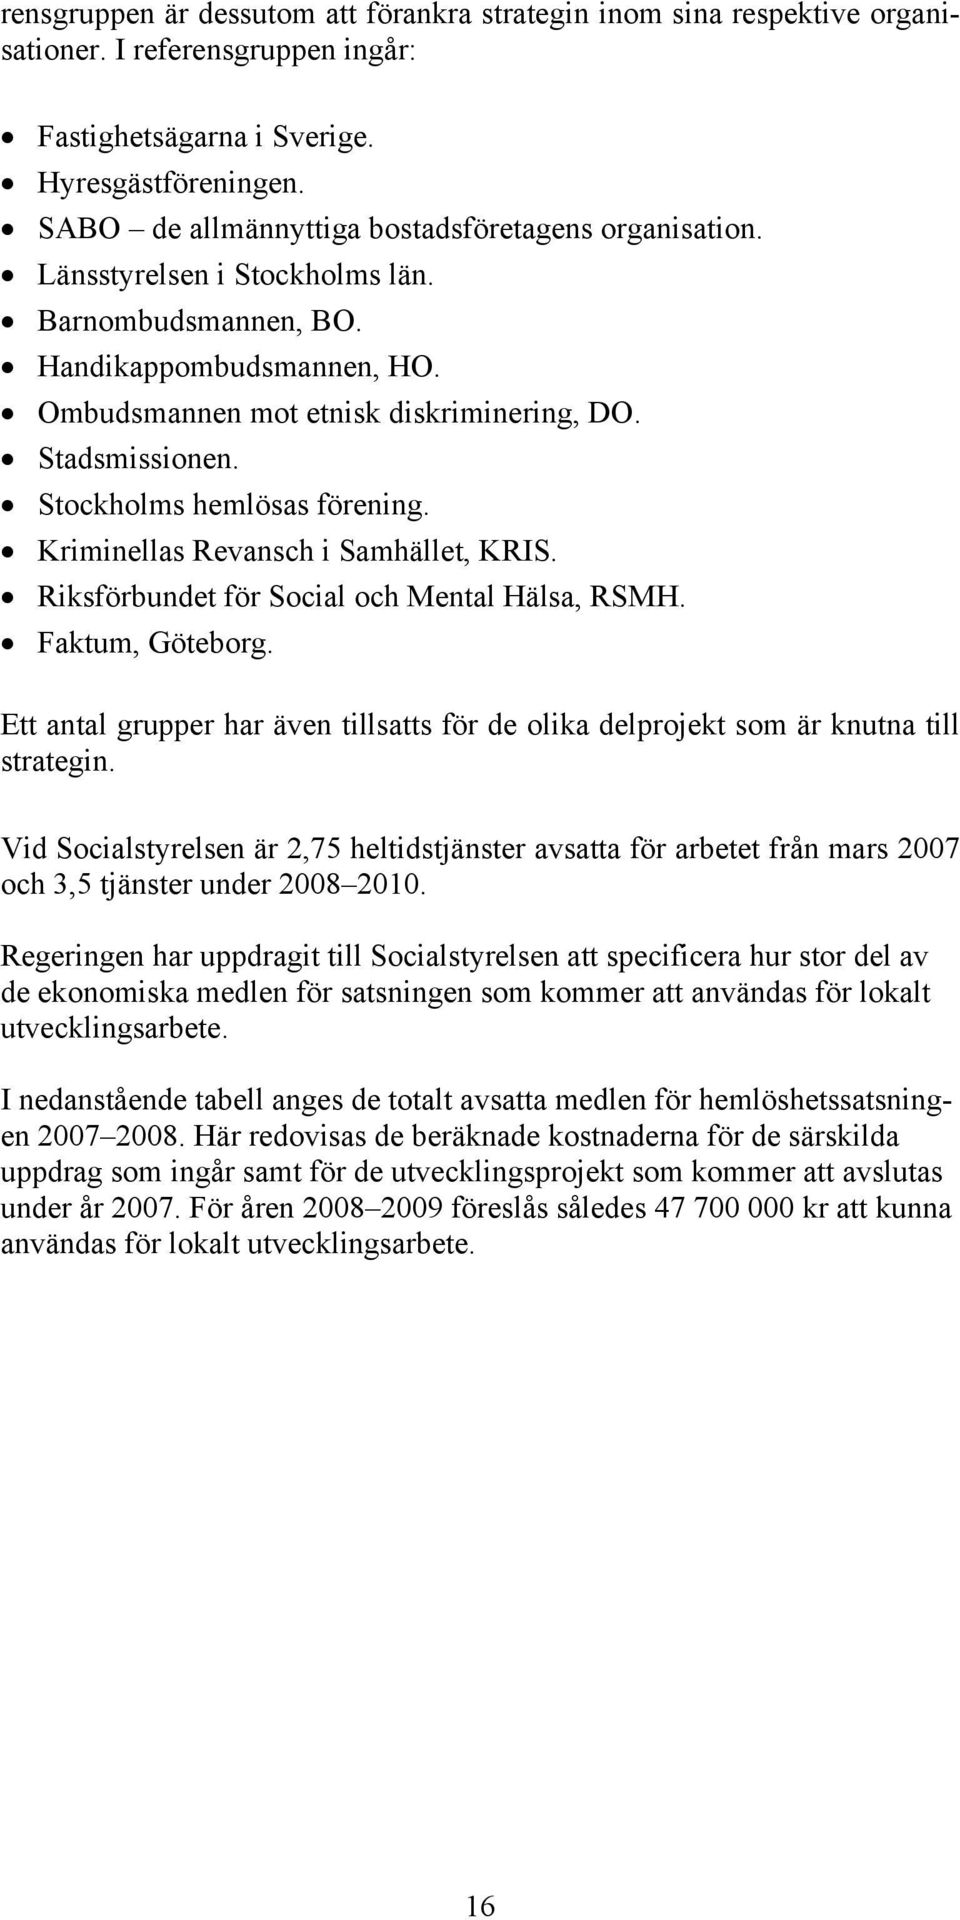 Stockholms hemlösas förening. Kriminellas Revansch i Samhället, KRIS. Riksförbundet för Social och Mental Hälsa, RSMH. Faktum, Göteborg.